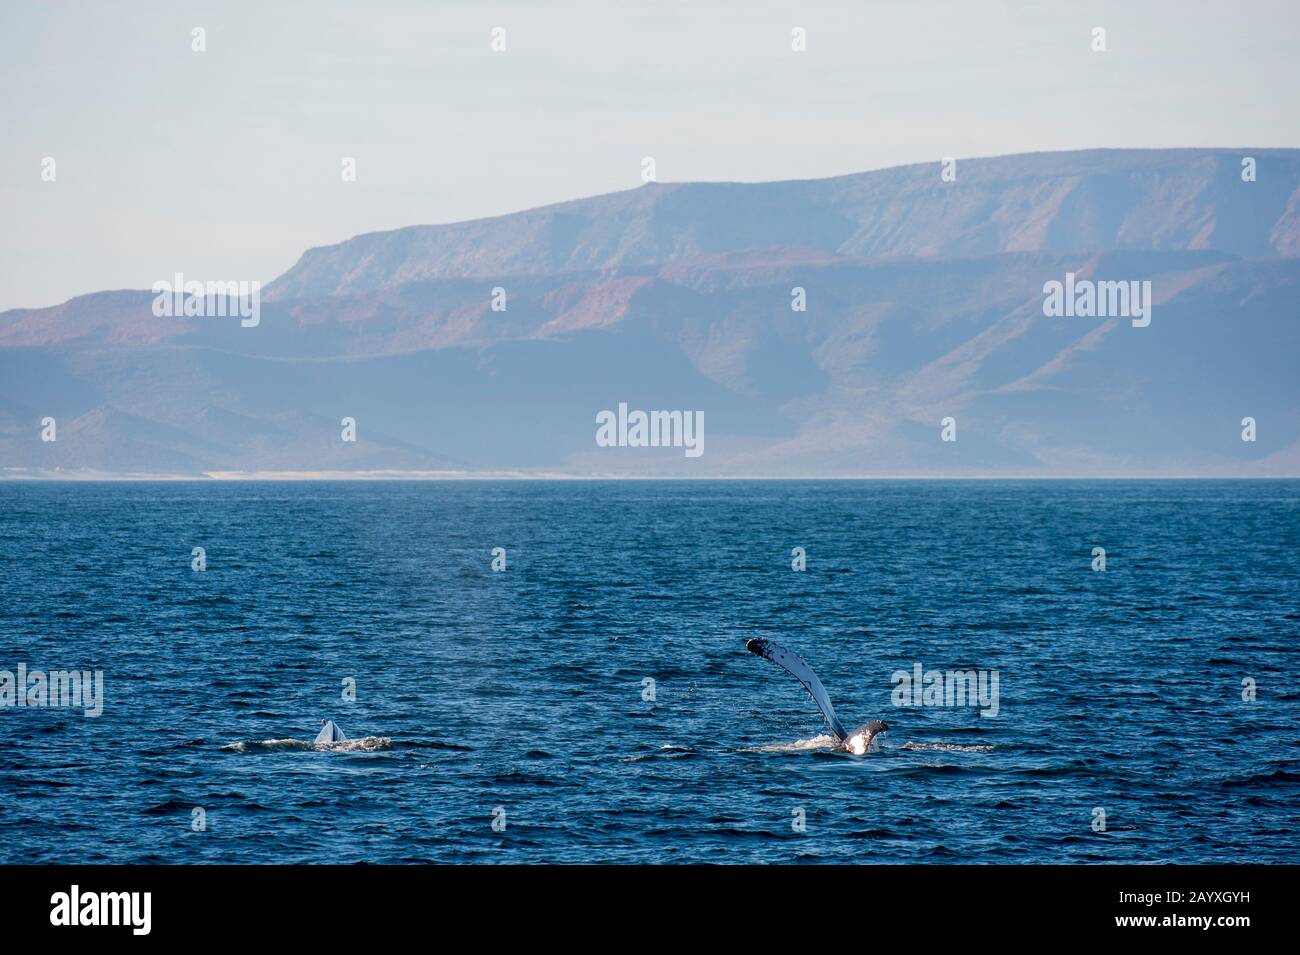 Baleine à bosse (Megaptera novaeangliae) qui claque la nageoire pectorale sur l'eau dans la Bahia de la Paz, mer de Cortez en Basse-Californie, Mexique. Banque D'Images